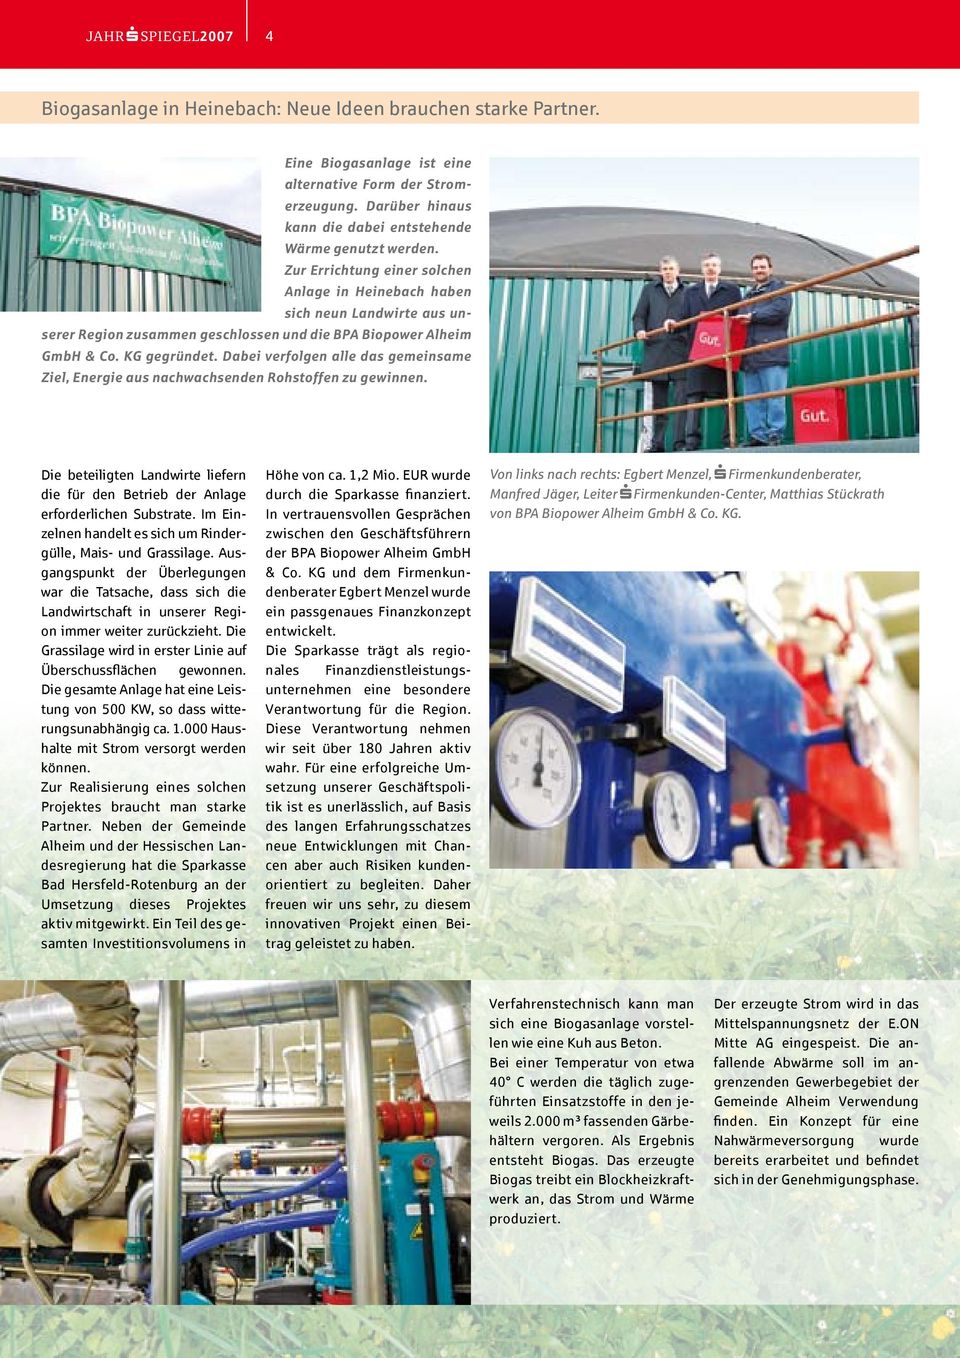 Zur Errichtung einer solchen Anlage in Heinebach haben sich neun Landwirte aus unserer Region zusammen geschlossen und die BPA Biopower Alheim GmbH & Co. KG gegründet.